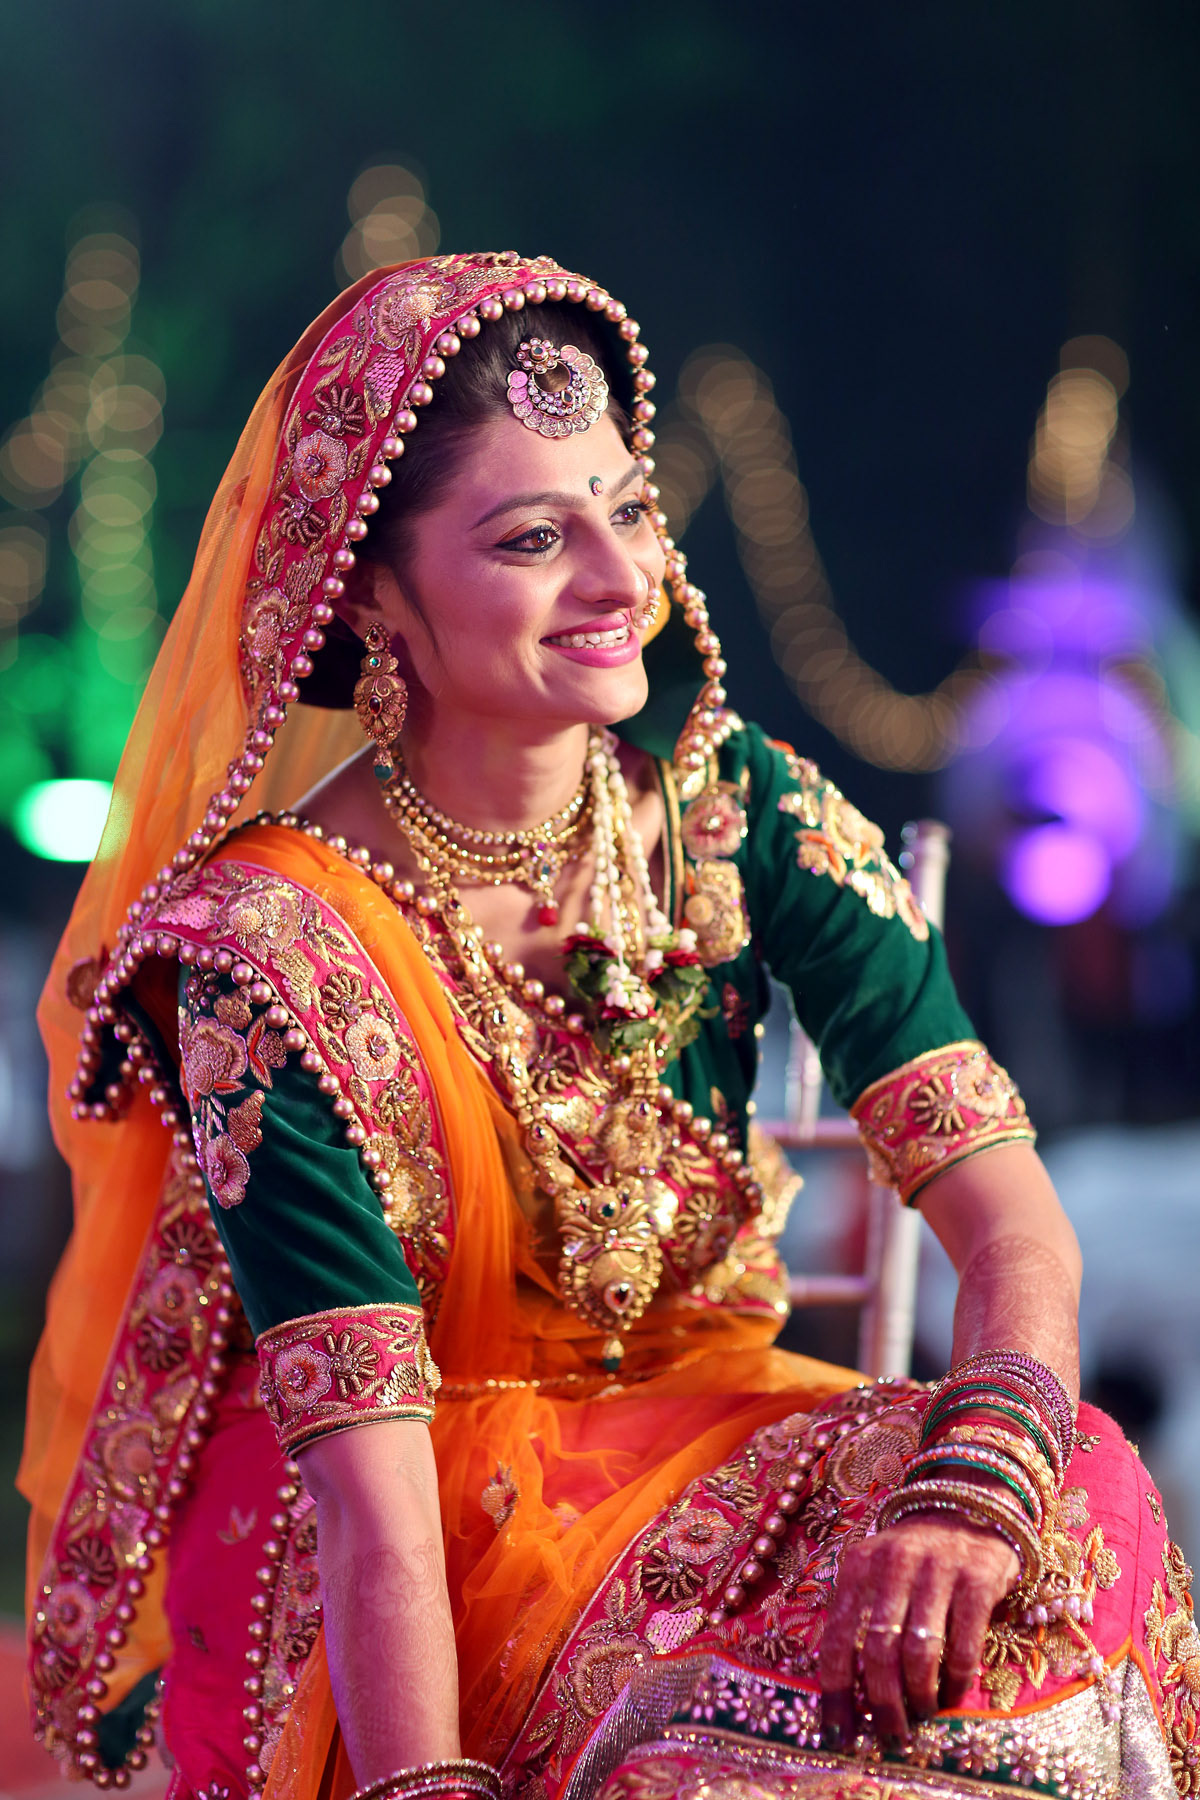 wedding portraits coupleshoot indianweddings colorful decoration bokeh lights